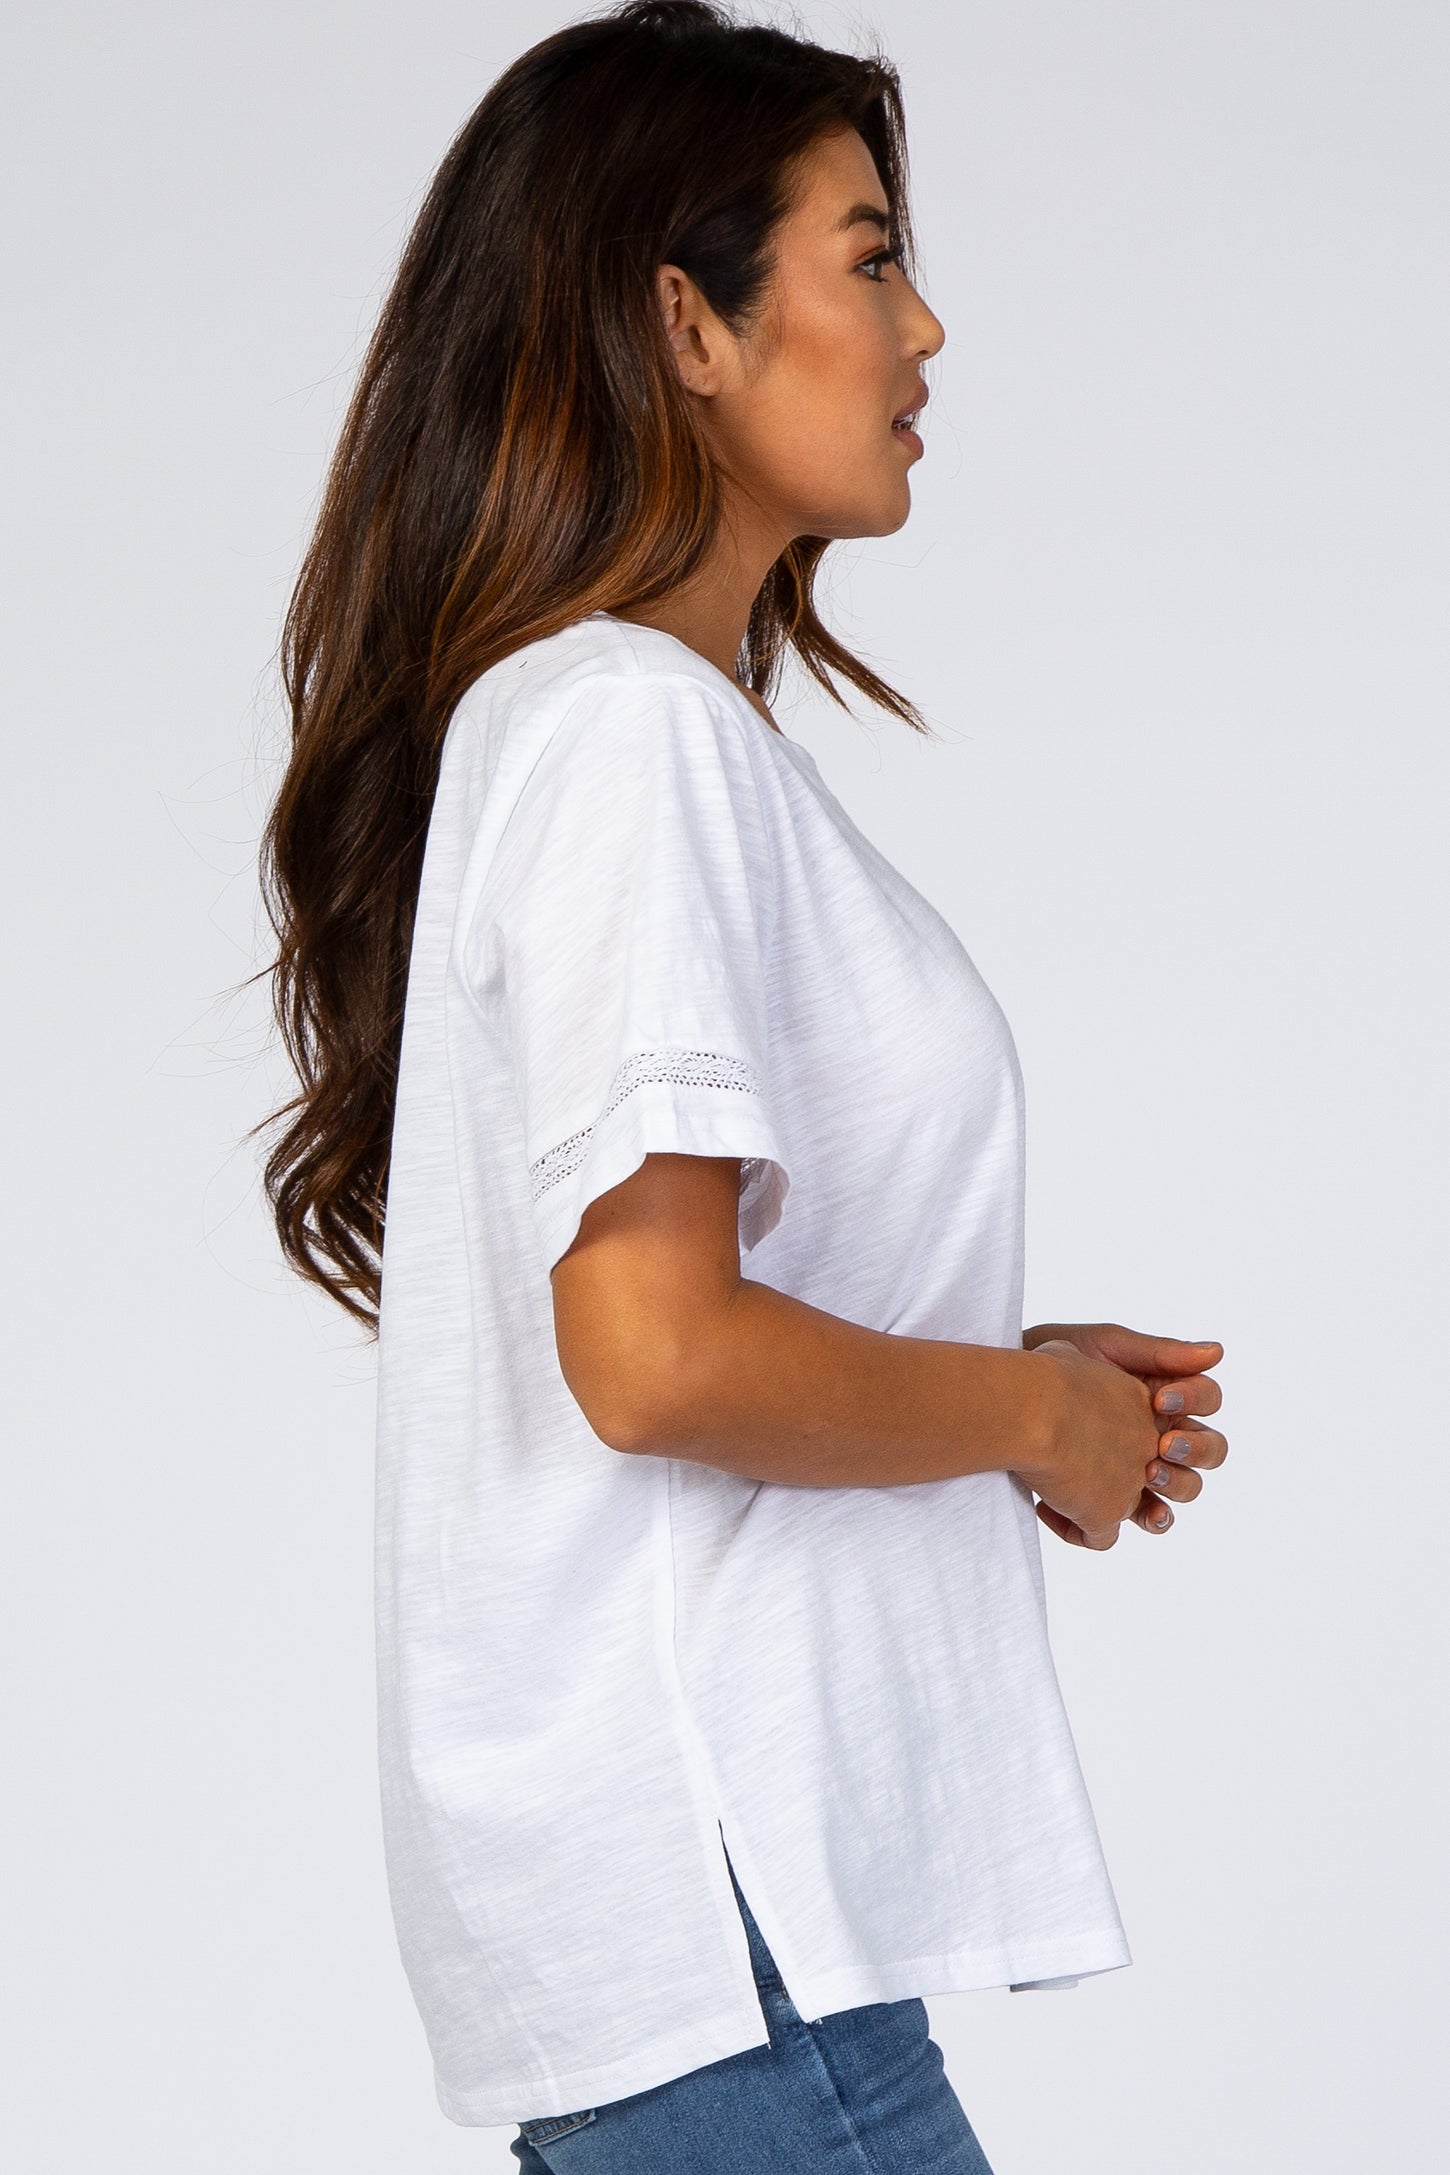 White Crochet Inset Short Sleeve Maternity Top